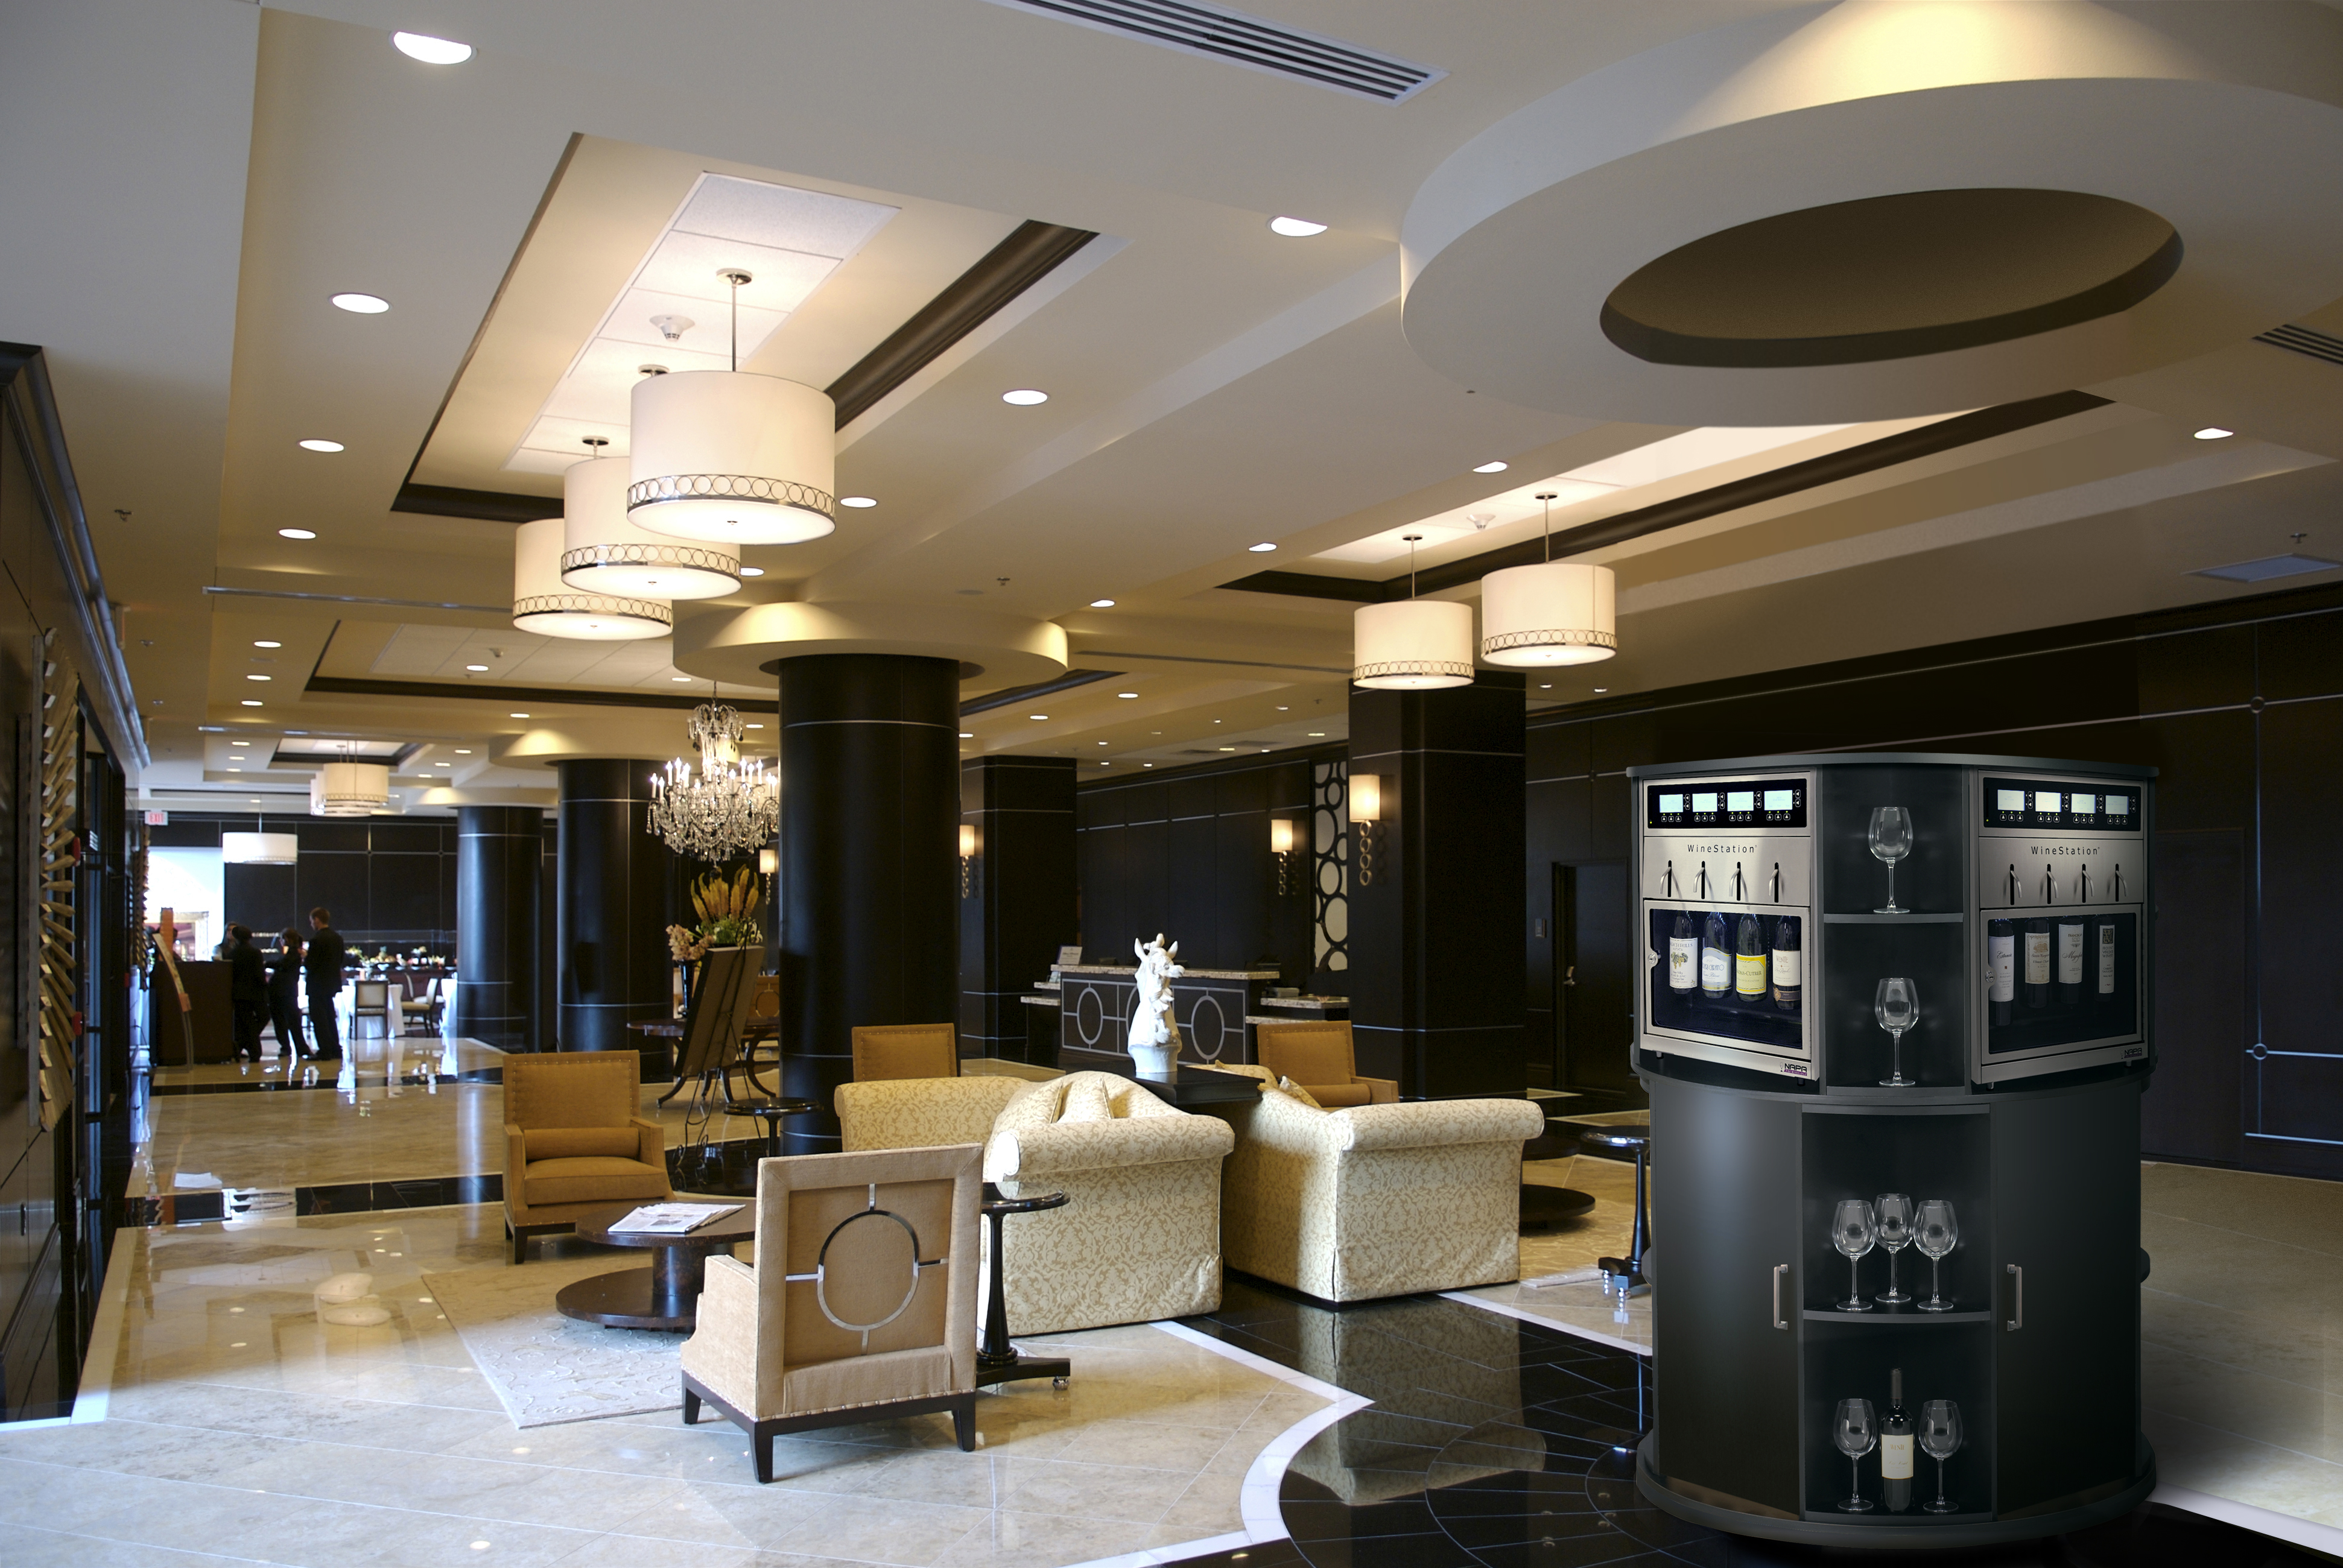 3.0 Hotel Lobby Round Elegant - Self Service